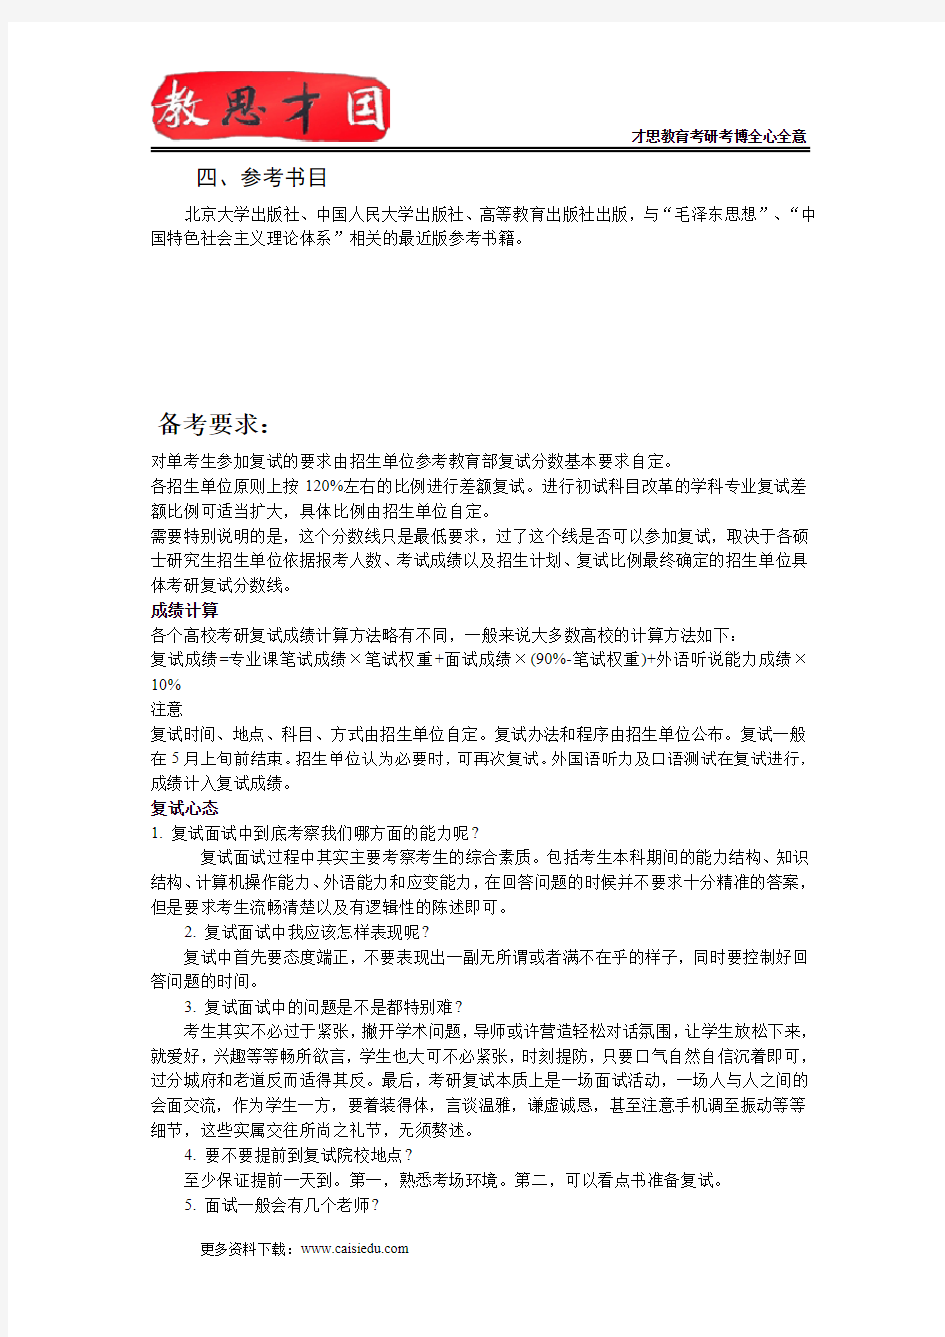 2015年北京理工大学805马克思主义理论中国化理论与实践考研大纲,考研参考书,考试形式